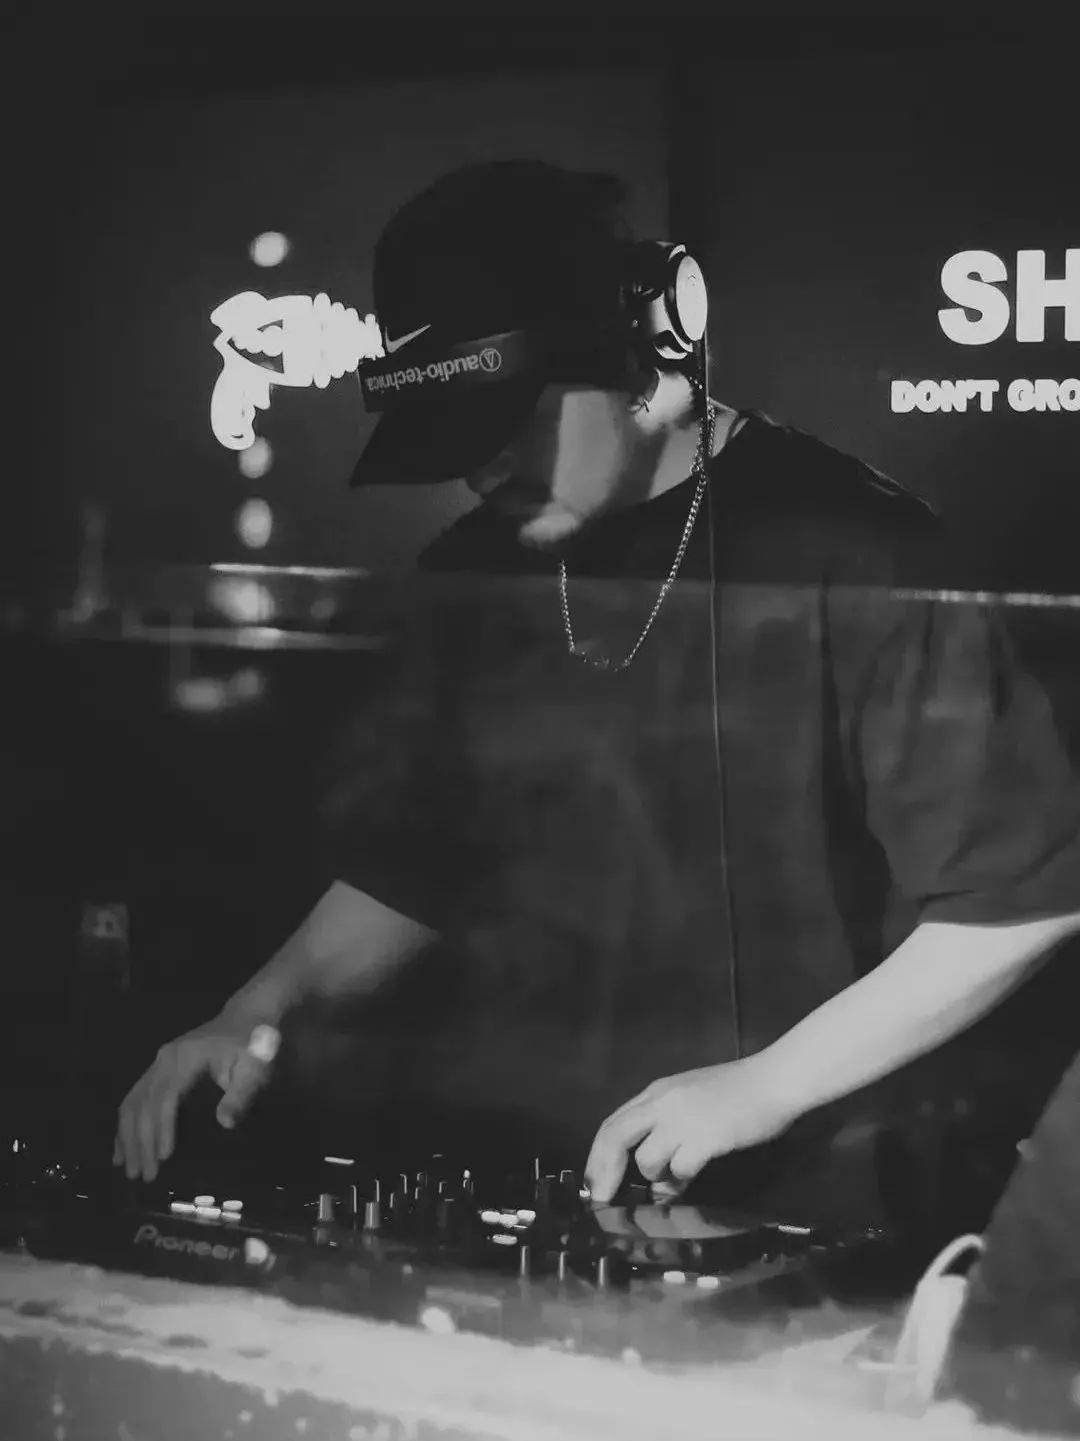 12/16 周五 | Hip-hop Don't Stop - Roundtable圆桌议会@SHOOT-杭州SHOOT酒吧